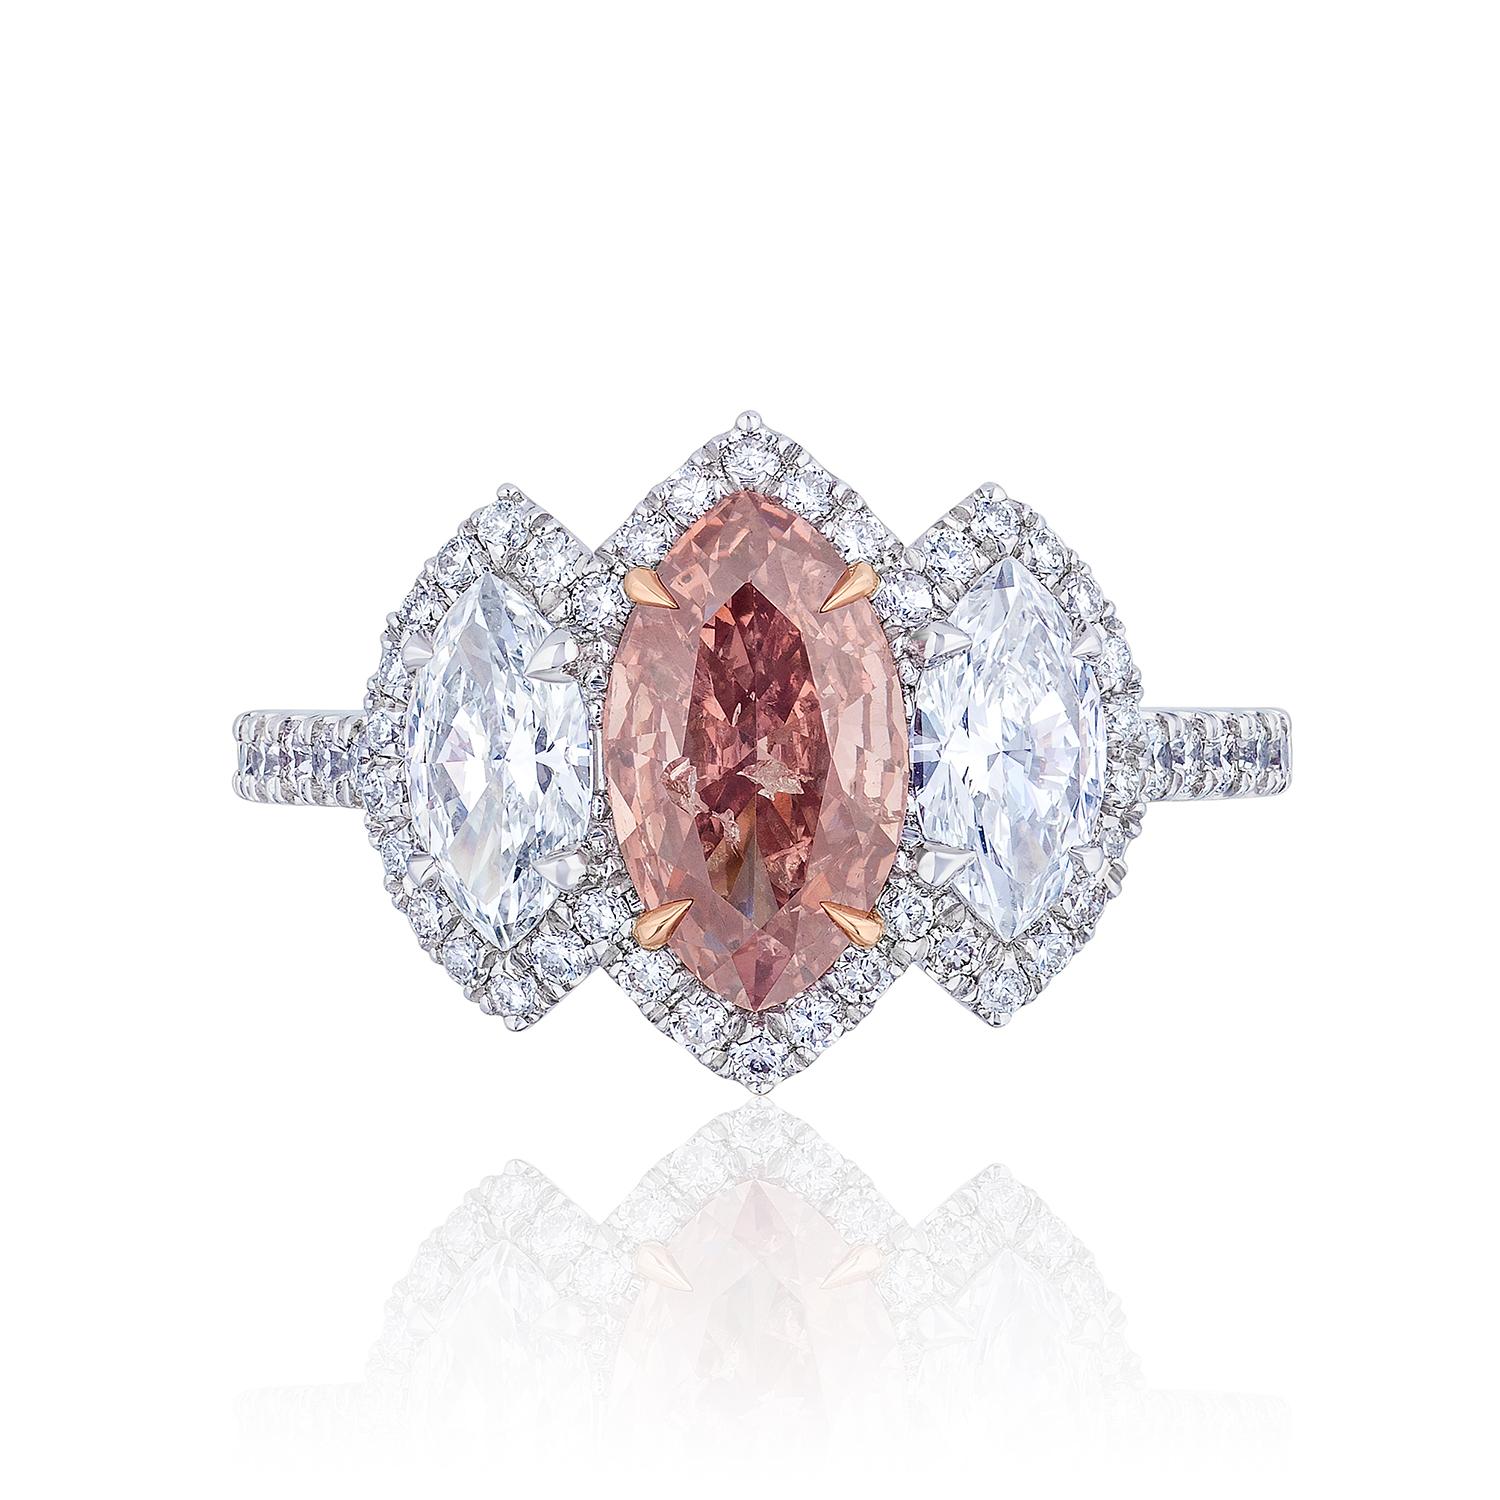 Diamant de forme marquise pesant 1,01 carat avec certificat GIA indiquant que le diamant est de couleur Fancy Deep Orangy Pink. Couleur très unique.

Flanquée de diamants blancs de forme marquise pesant 0,80 carats, de couleur F et de pureté VS.

En